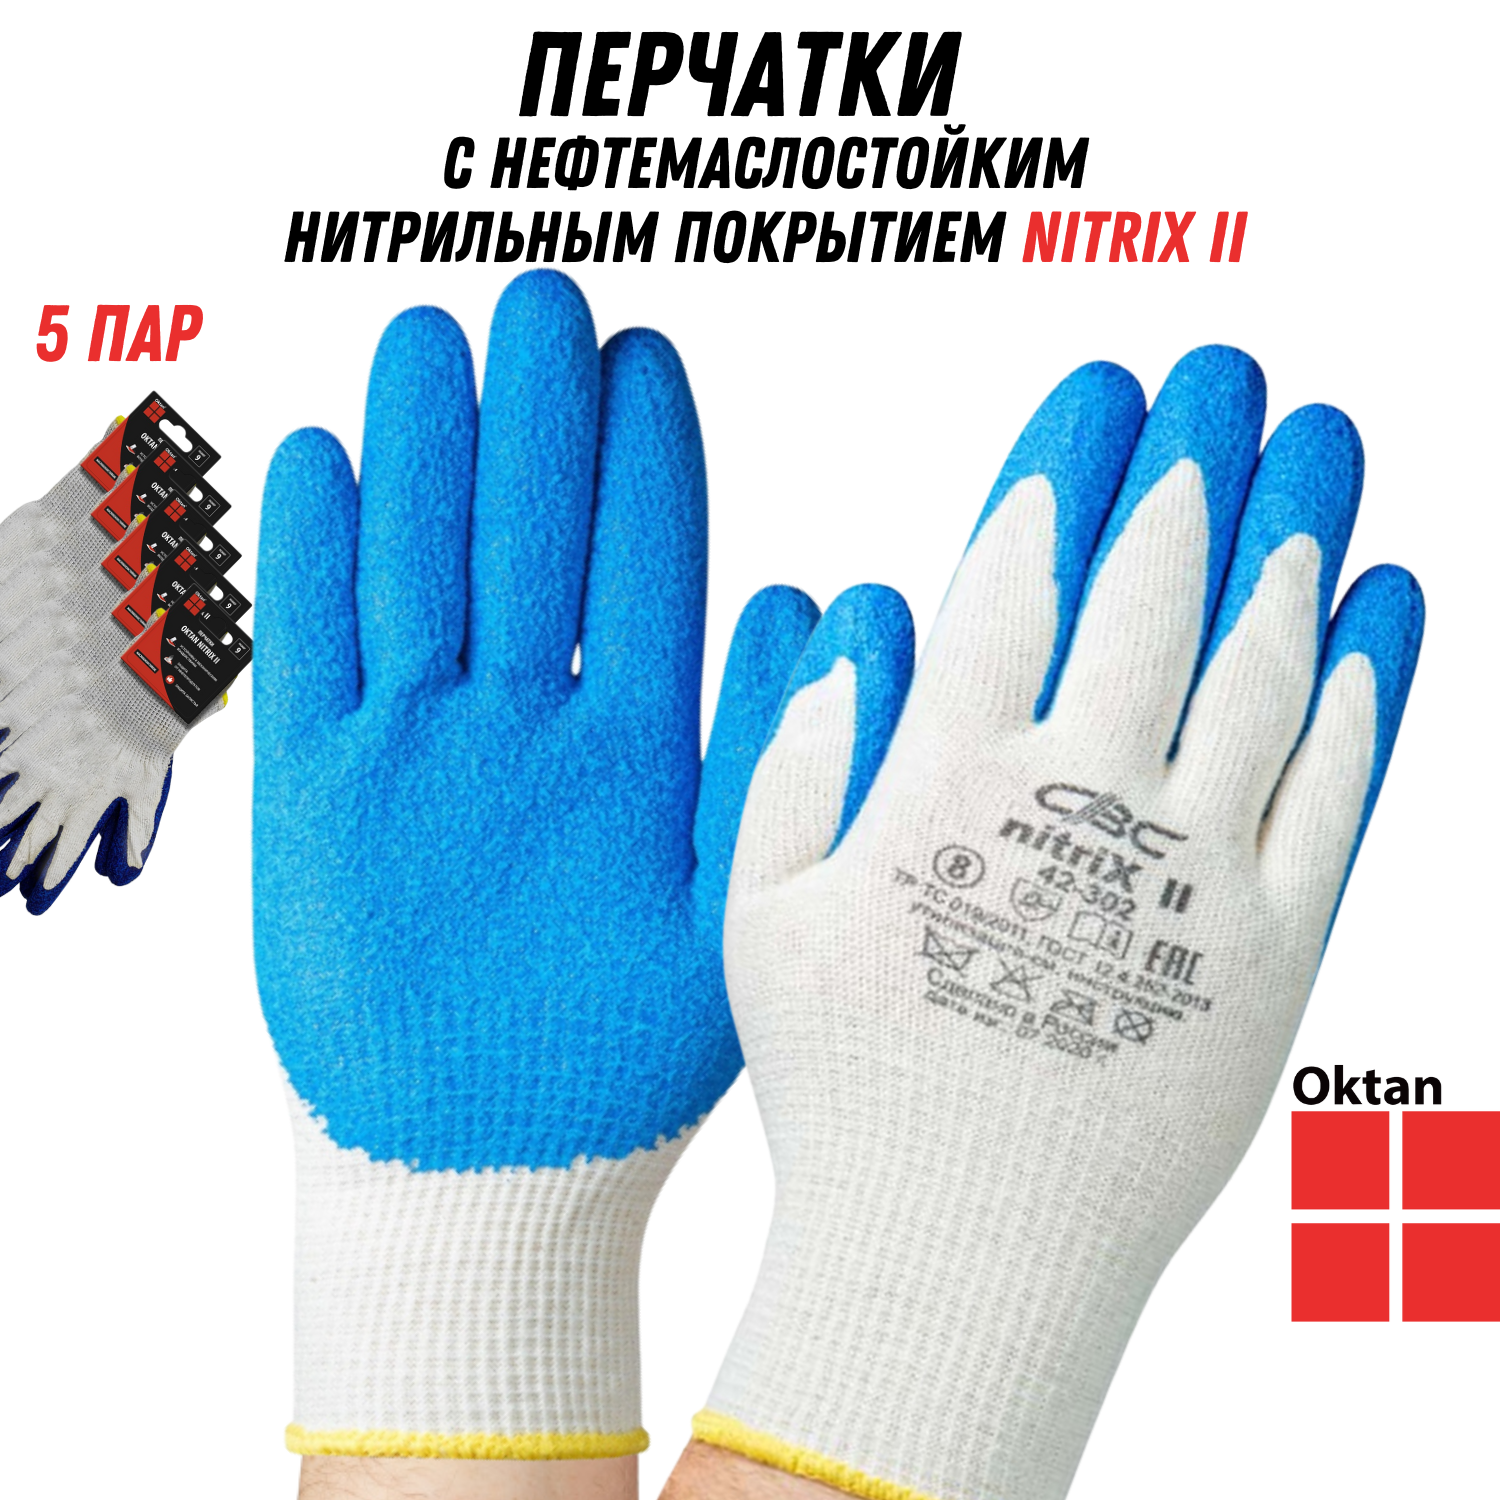 Перчатки рабочие Oktan NITRIX II А5-01-21-05-ММ белые с синим размер 9, 5 пар набор ручек шариковых 4 штуки стержень 0 7 мм синий корпус оранжевый с синим колпачком